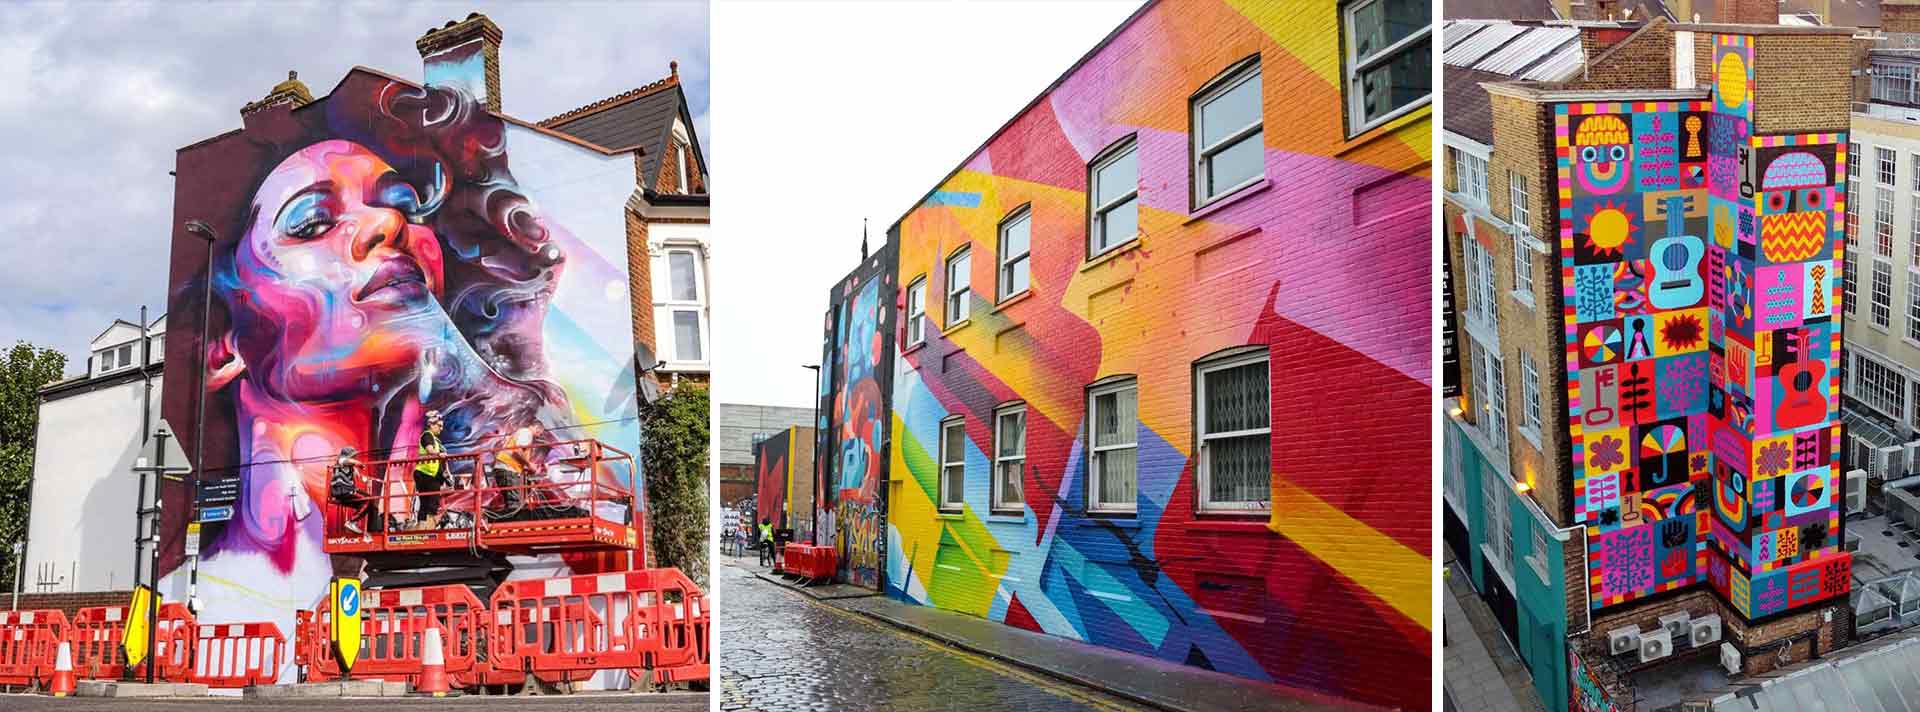 פסטיבל ציורי הקיר בלונדון